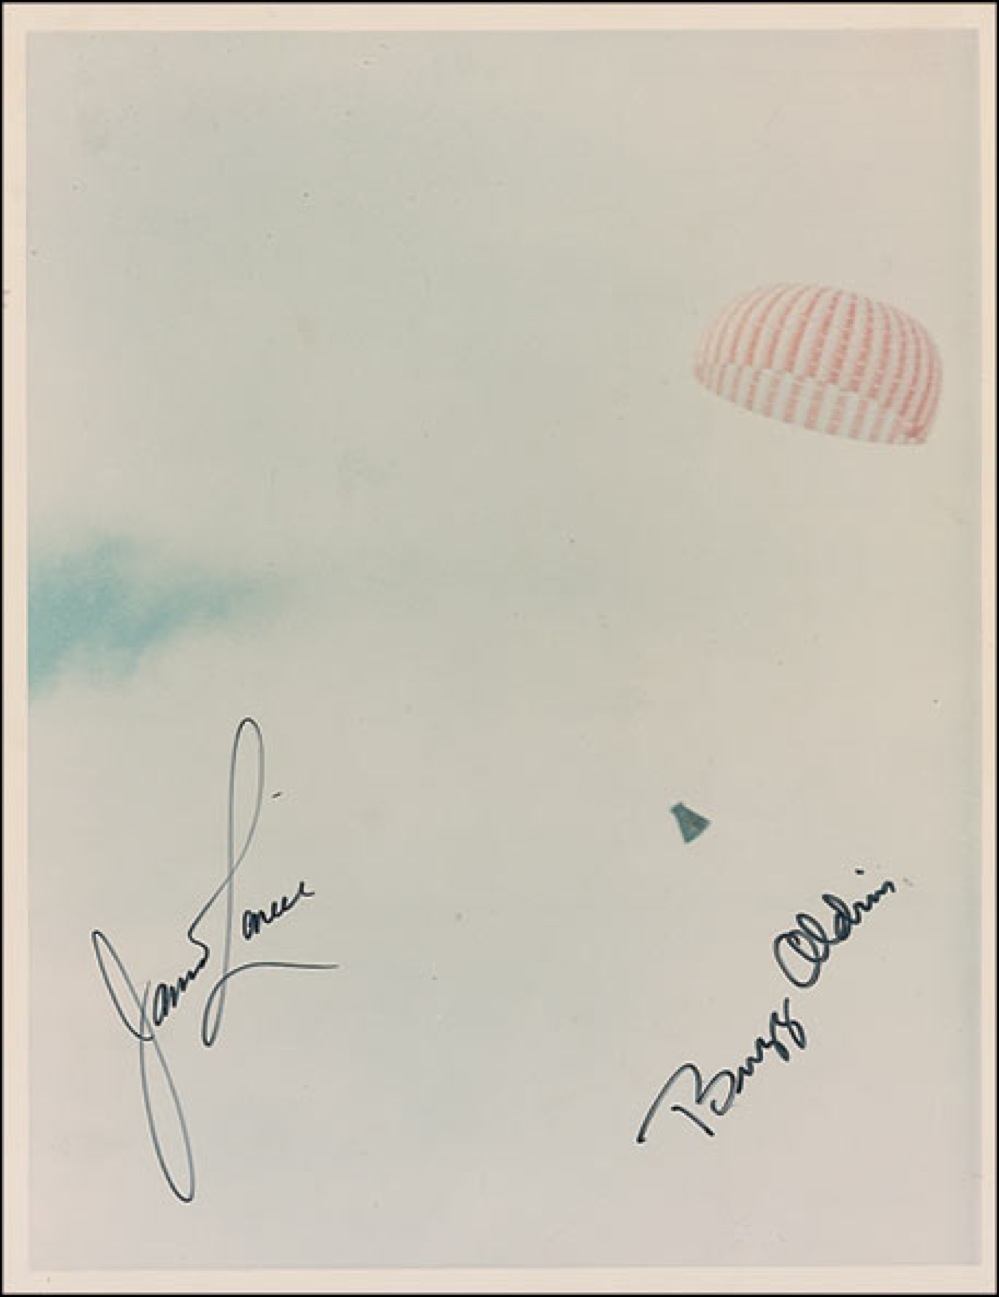 Lot #236 Gemini 12